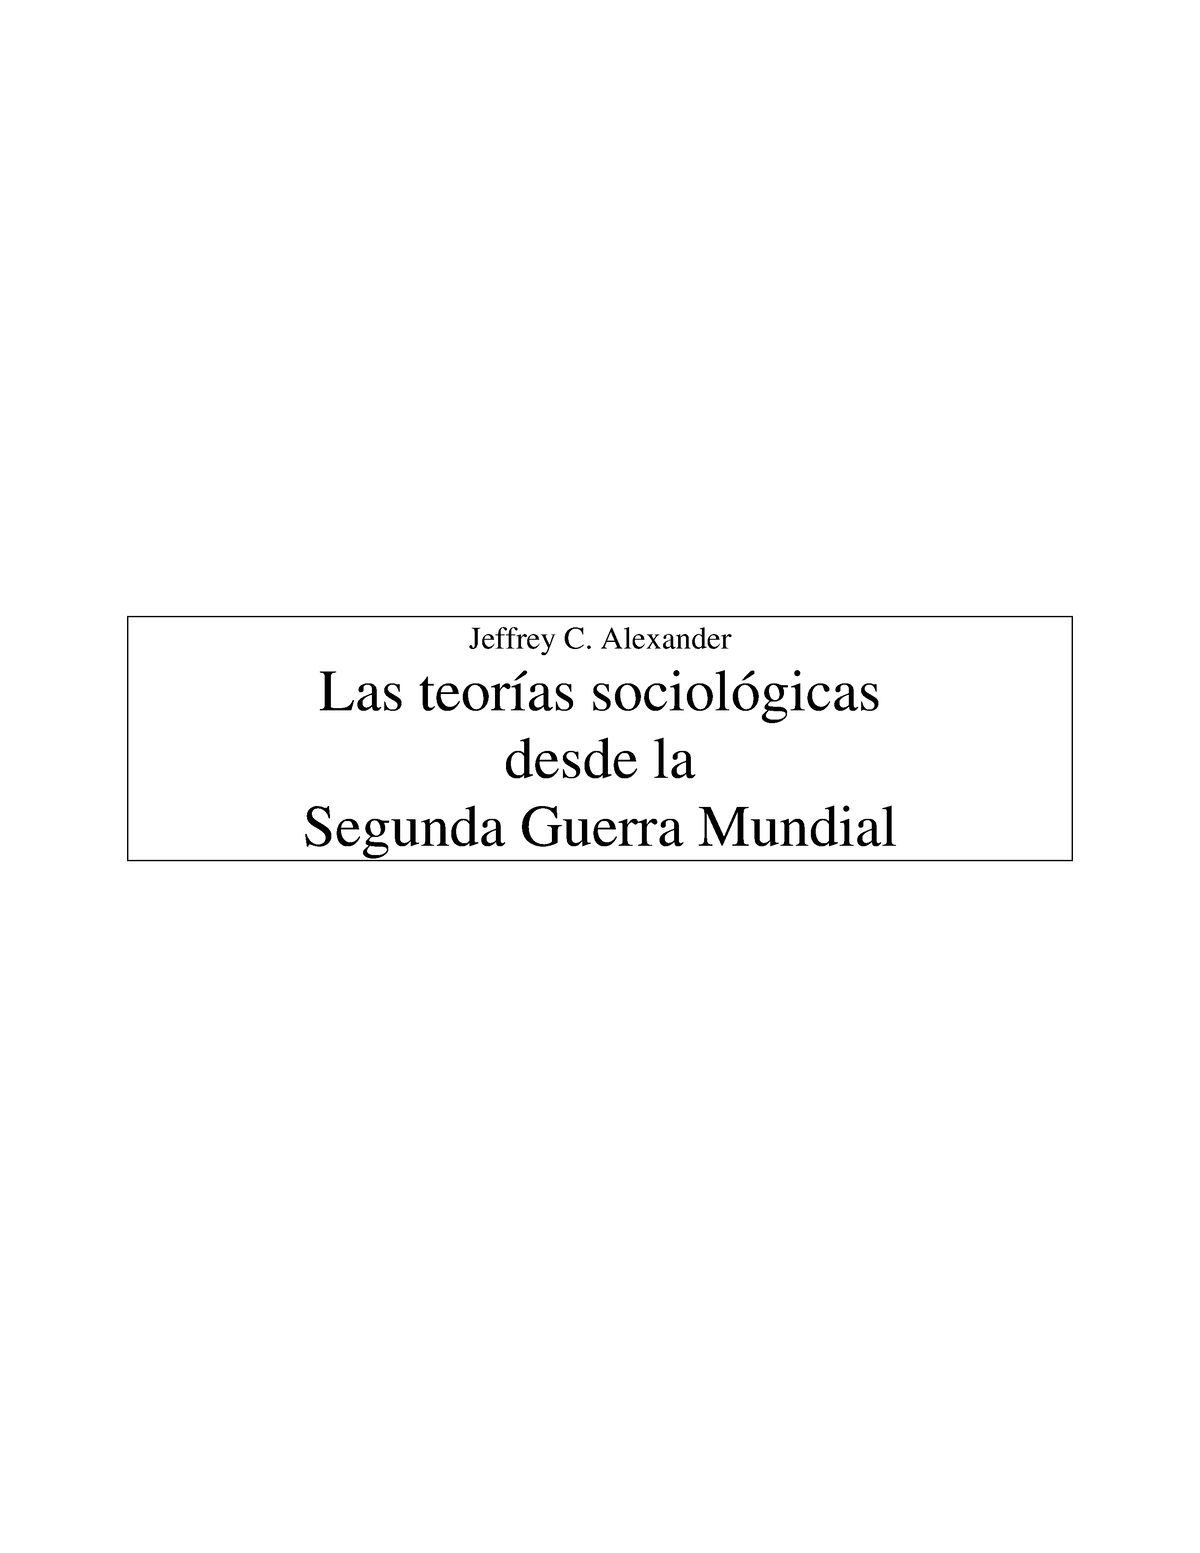 Las teorias sociologicas desde la Segunda Guerra Mundial-JAlexander -  Jeffrey C. Alexander Las - Studocu